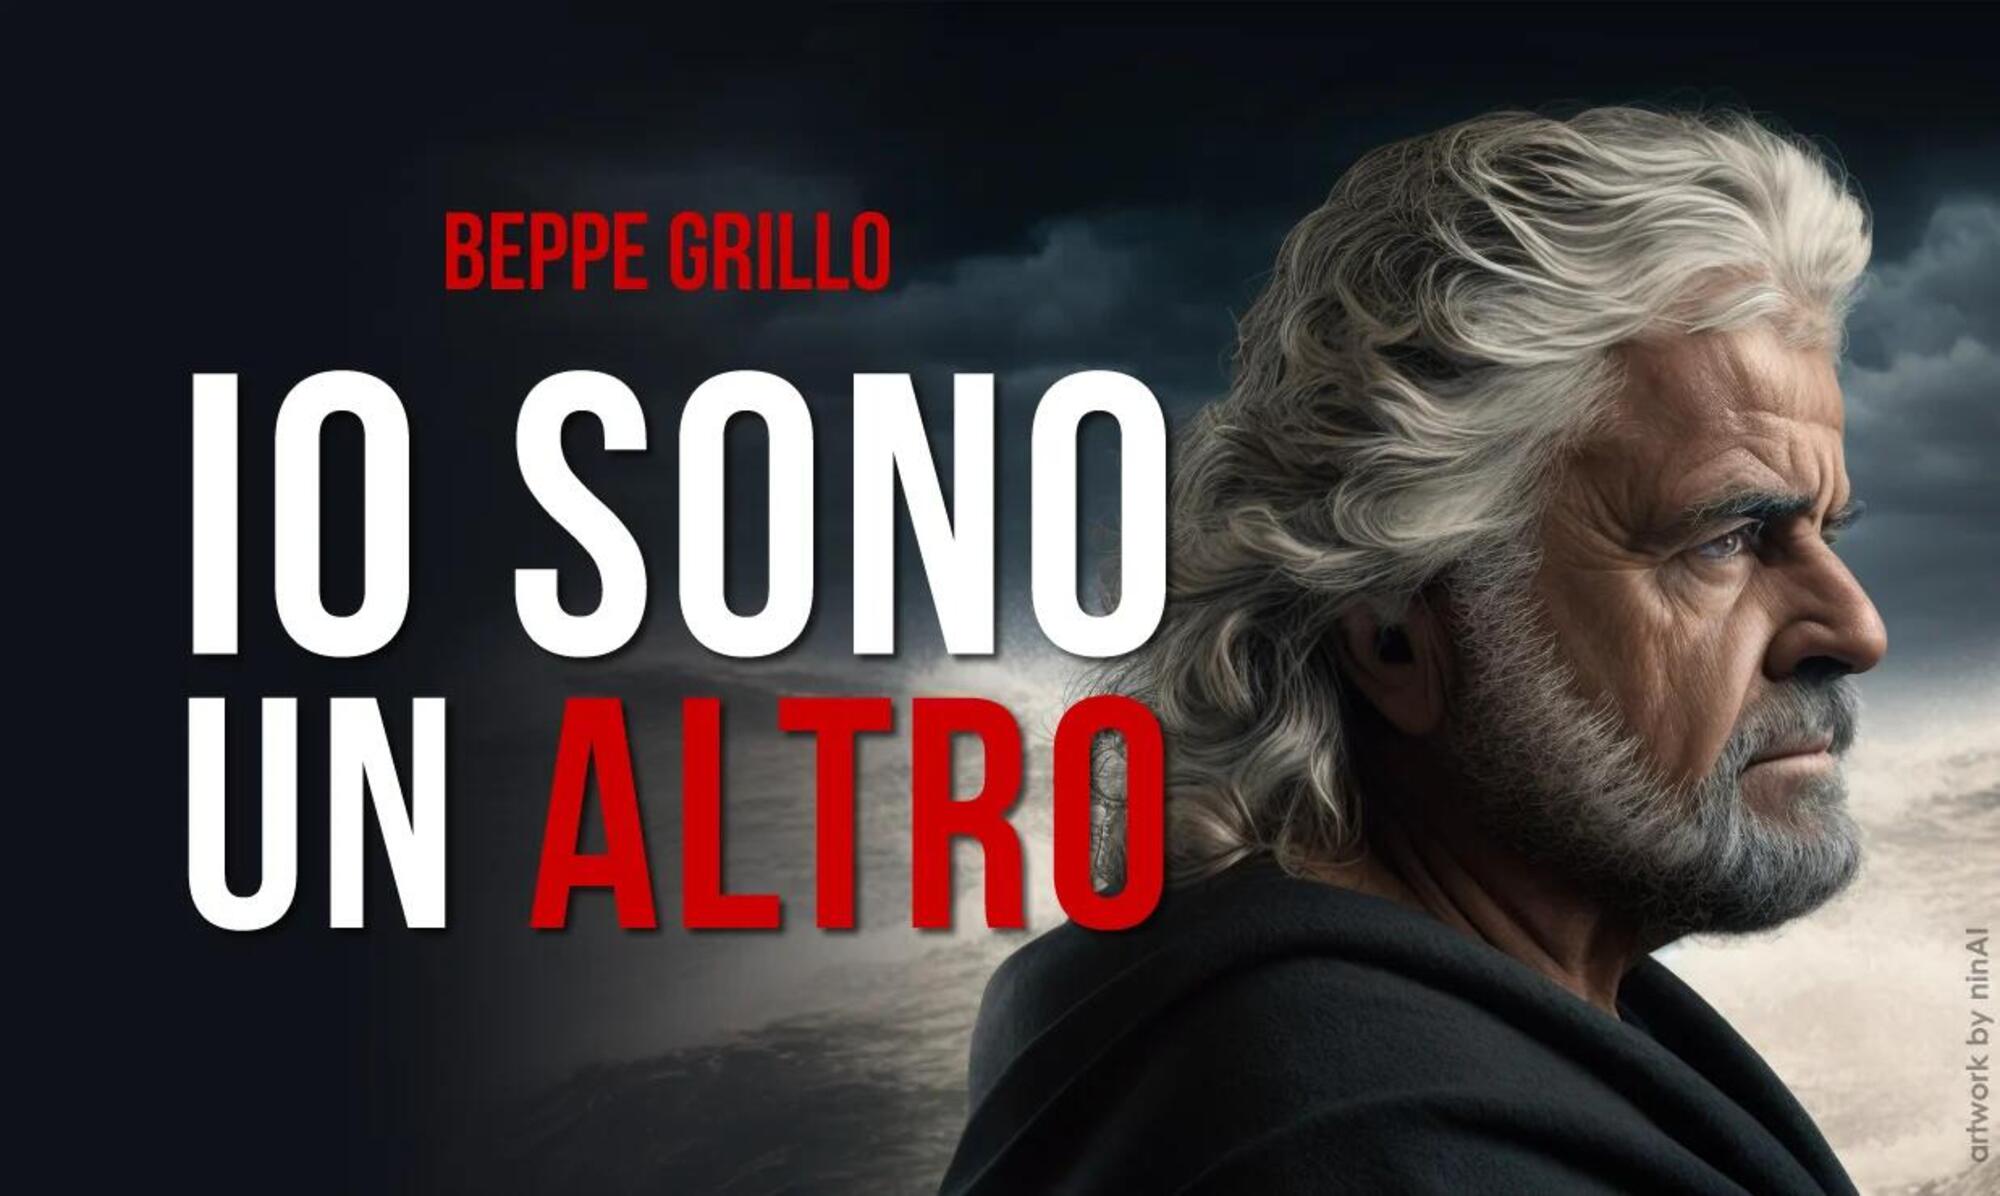 La locandina dello spettacolo di Beppe Grillo